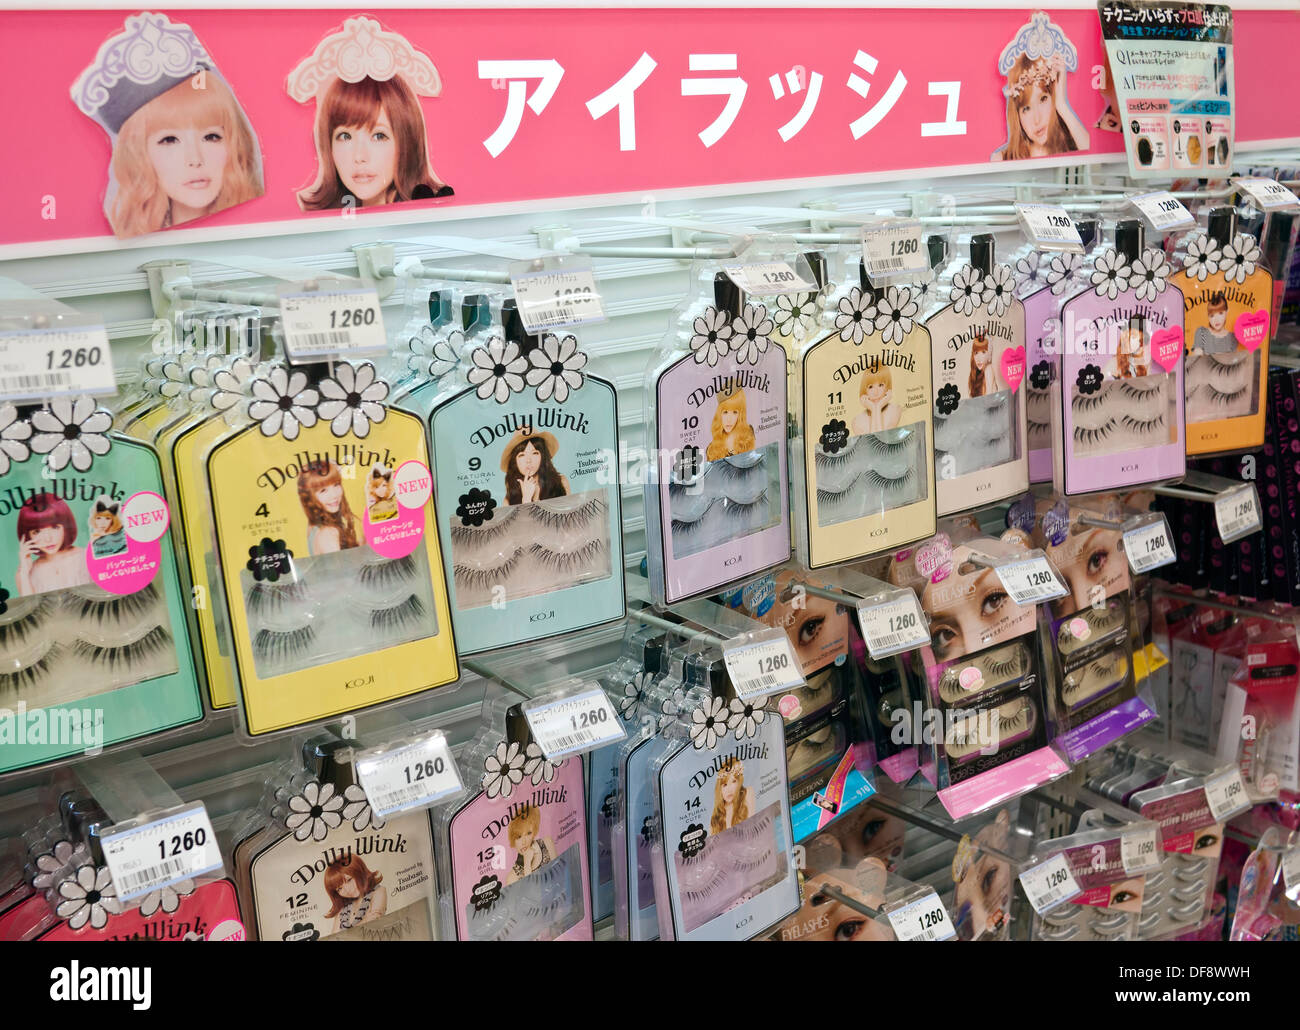 De l'étalage des produits cosmétiques et de maquillage japonais chers in department store au Japon. Banque D'Images